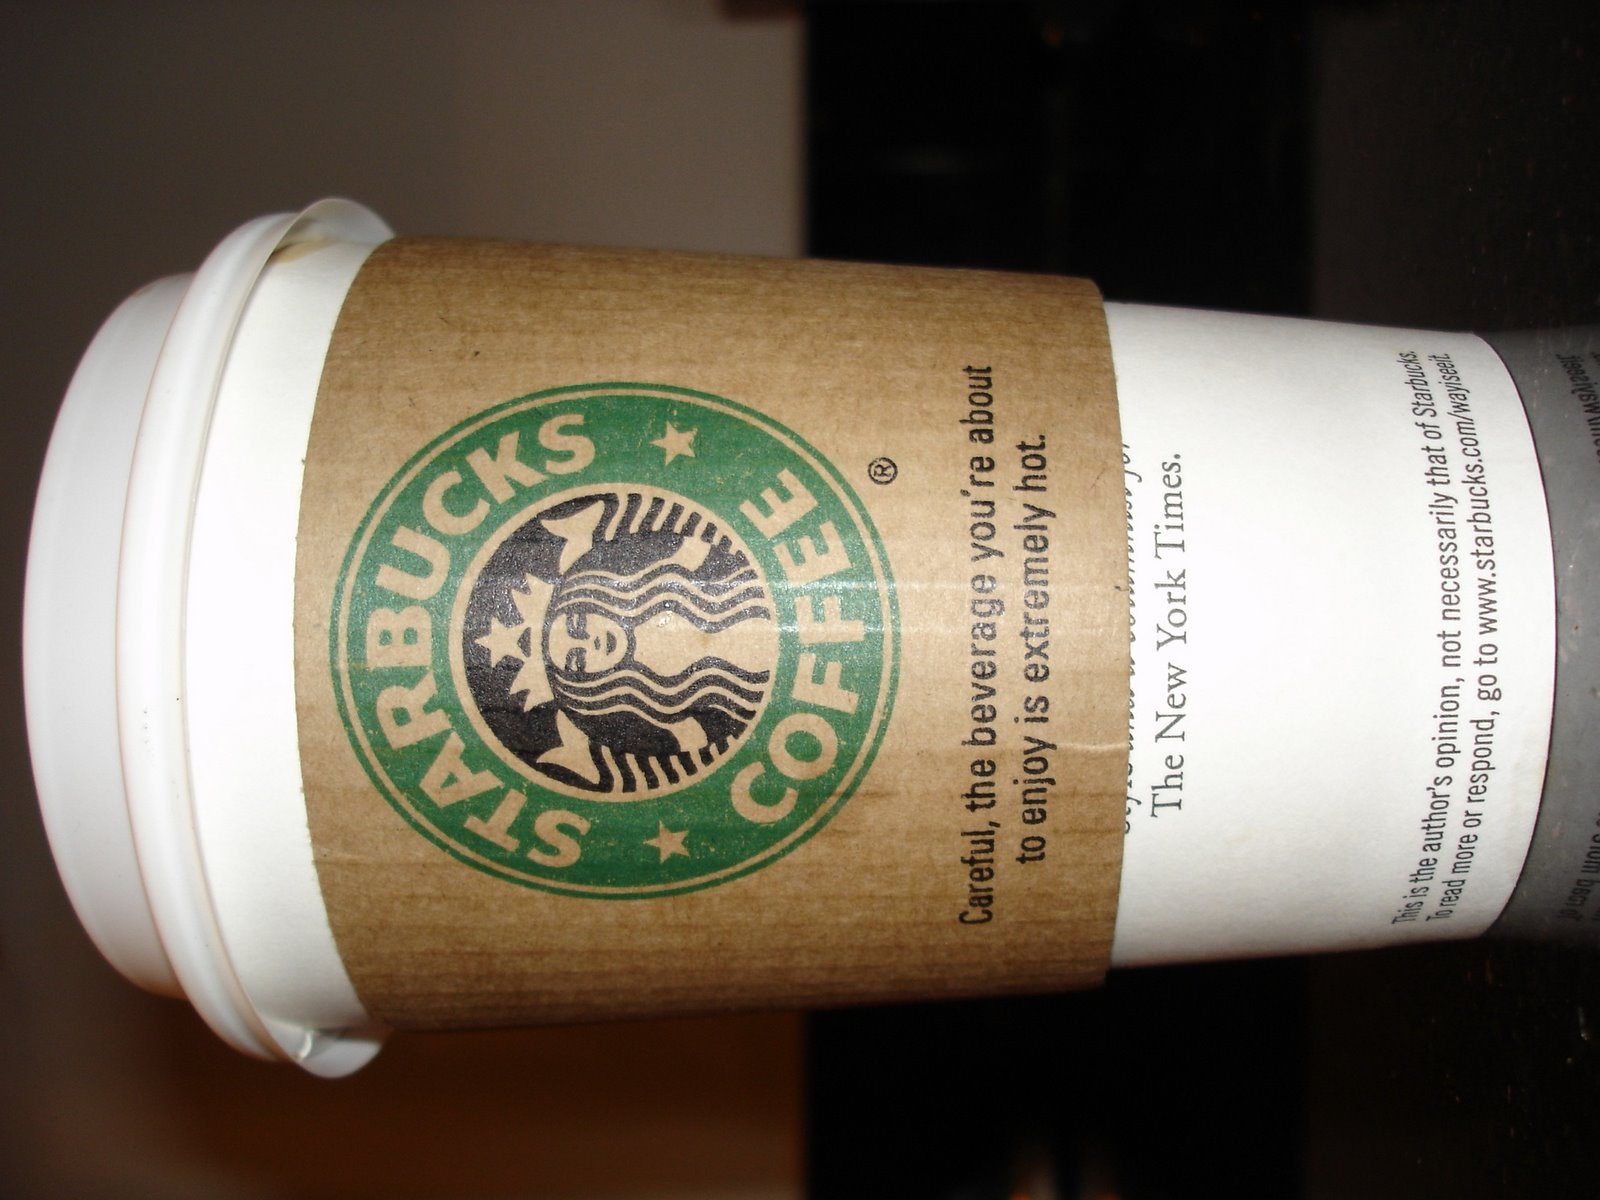 [Starbuckscup.jpg]